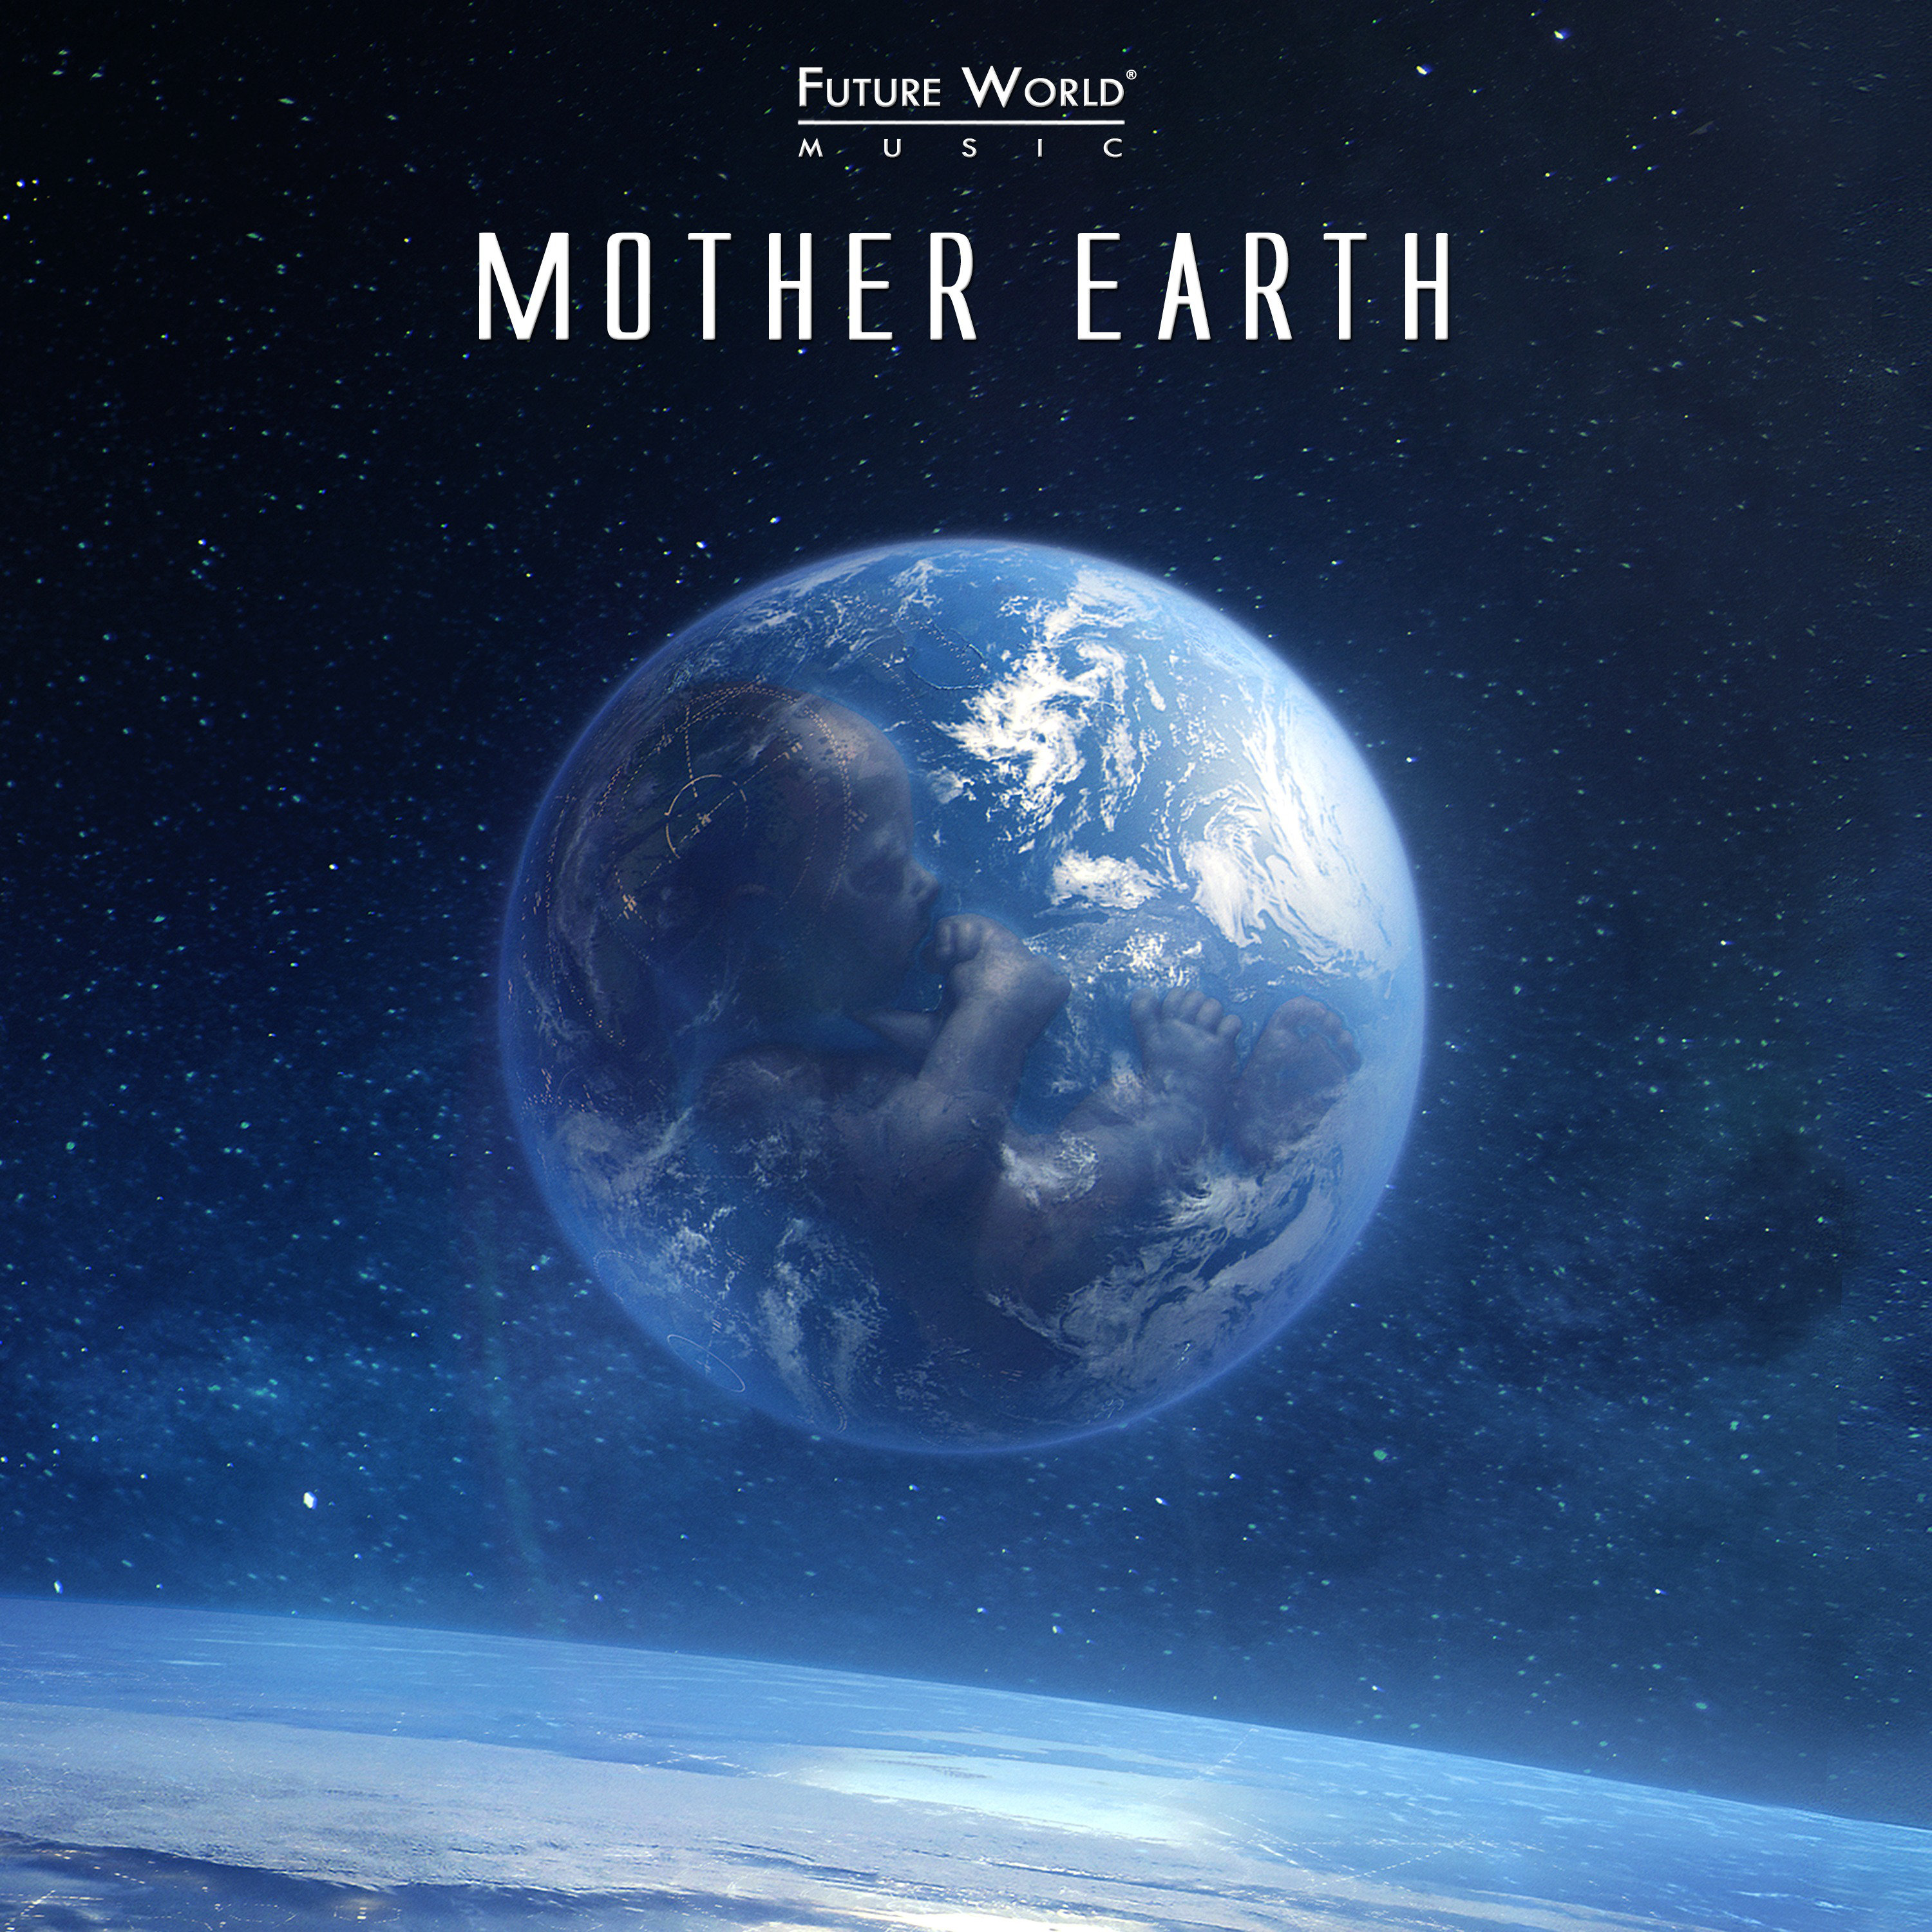 Музыка земли мп3. Земля в будущем. Будущее земли. Mother Earth. Future World.